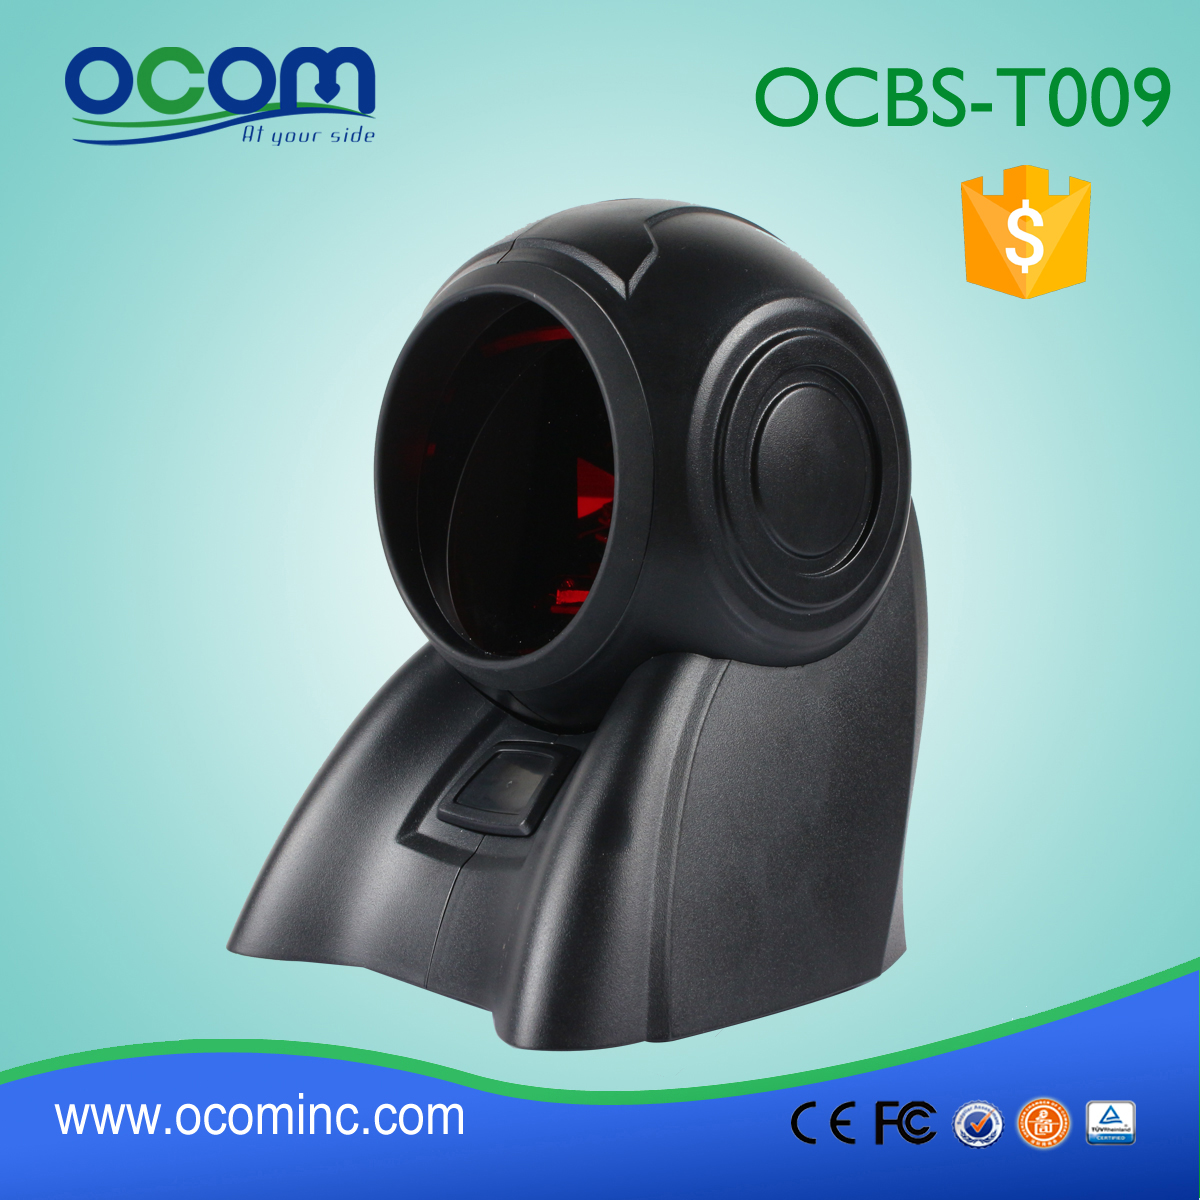 alimentation en eau chaude de codes à barres 1D scanner Omni, laser Omni scanner de codes barres